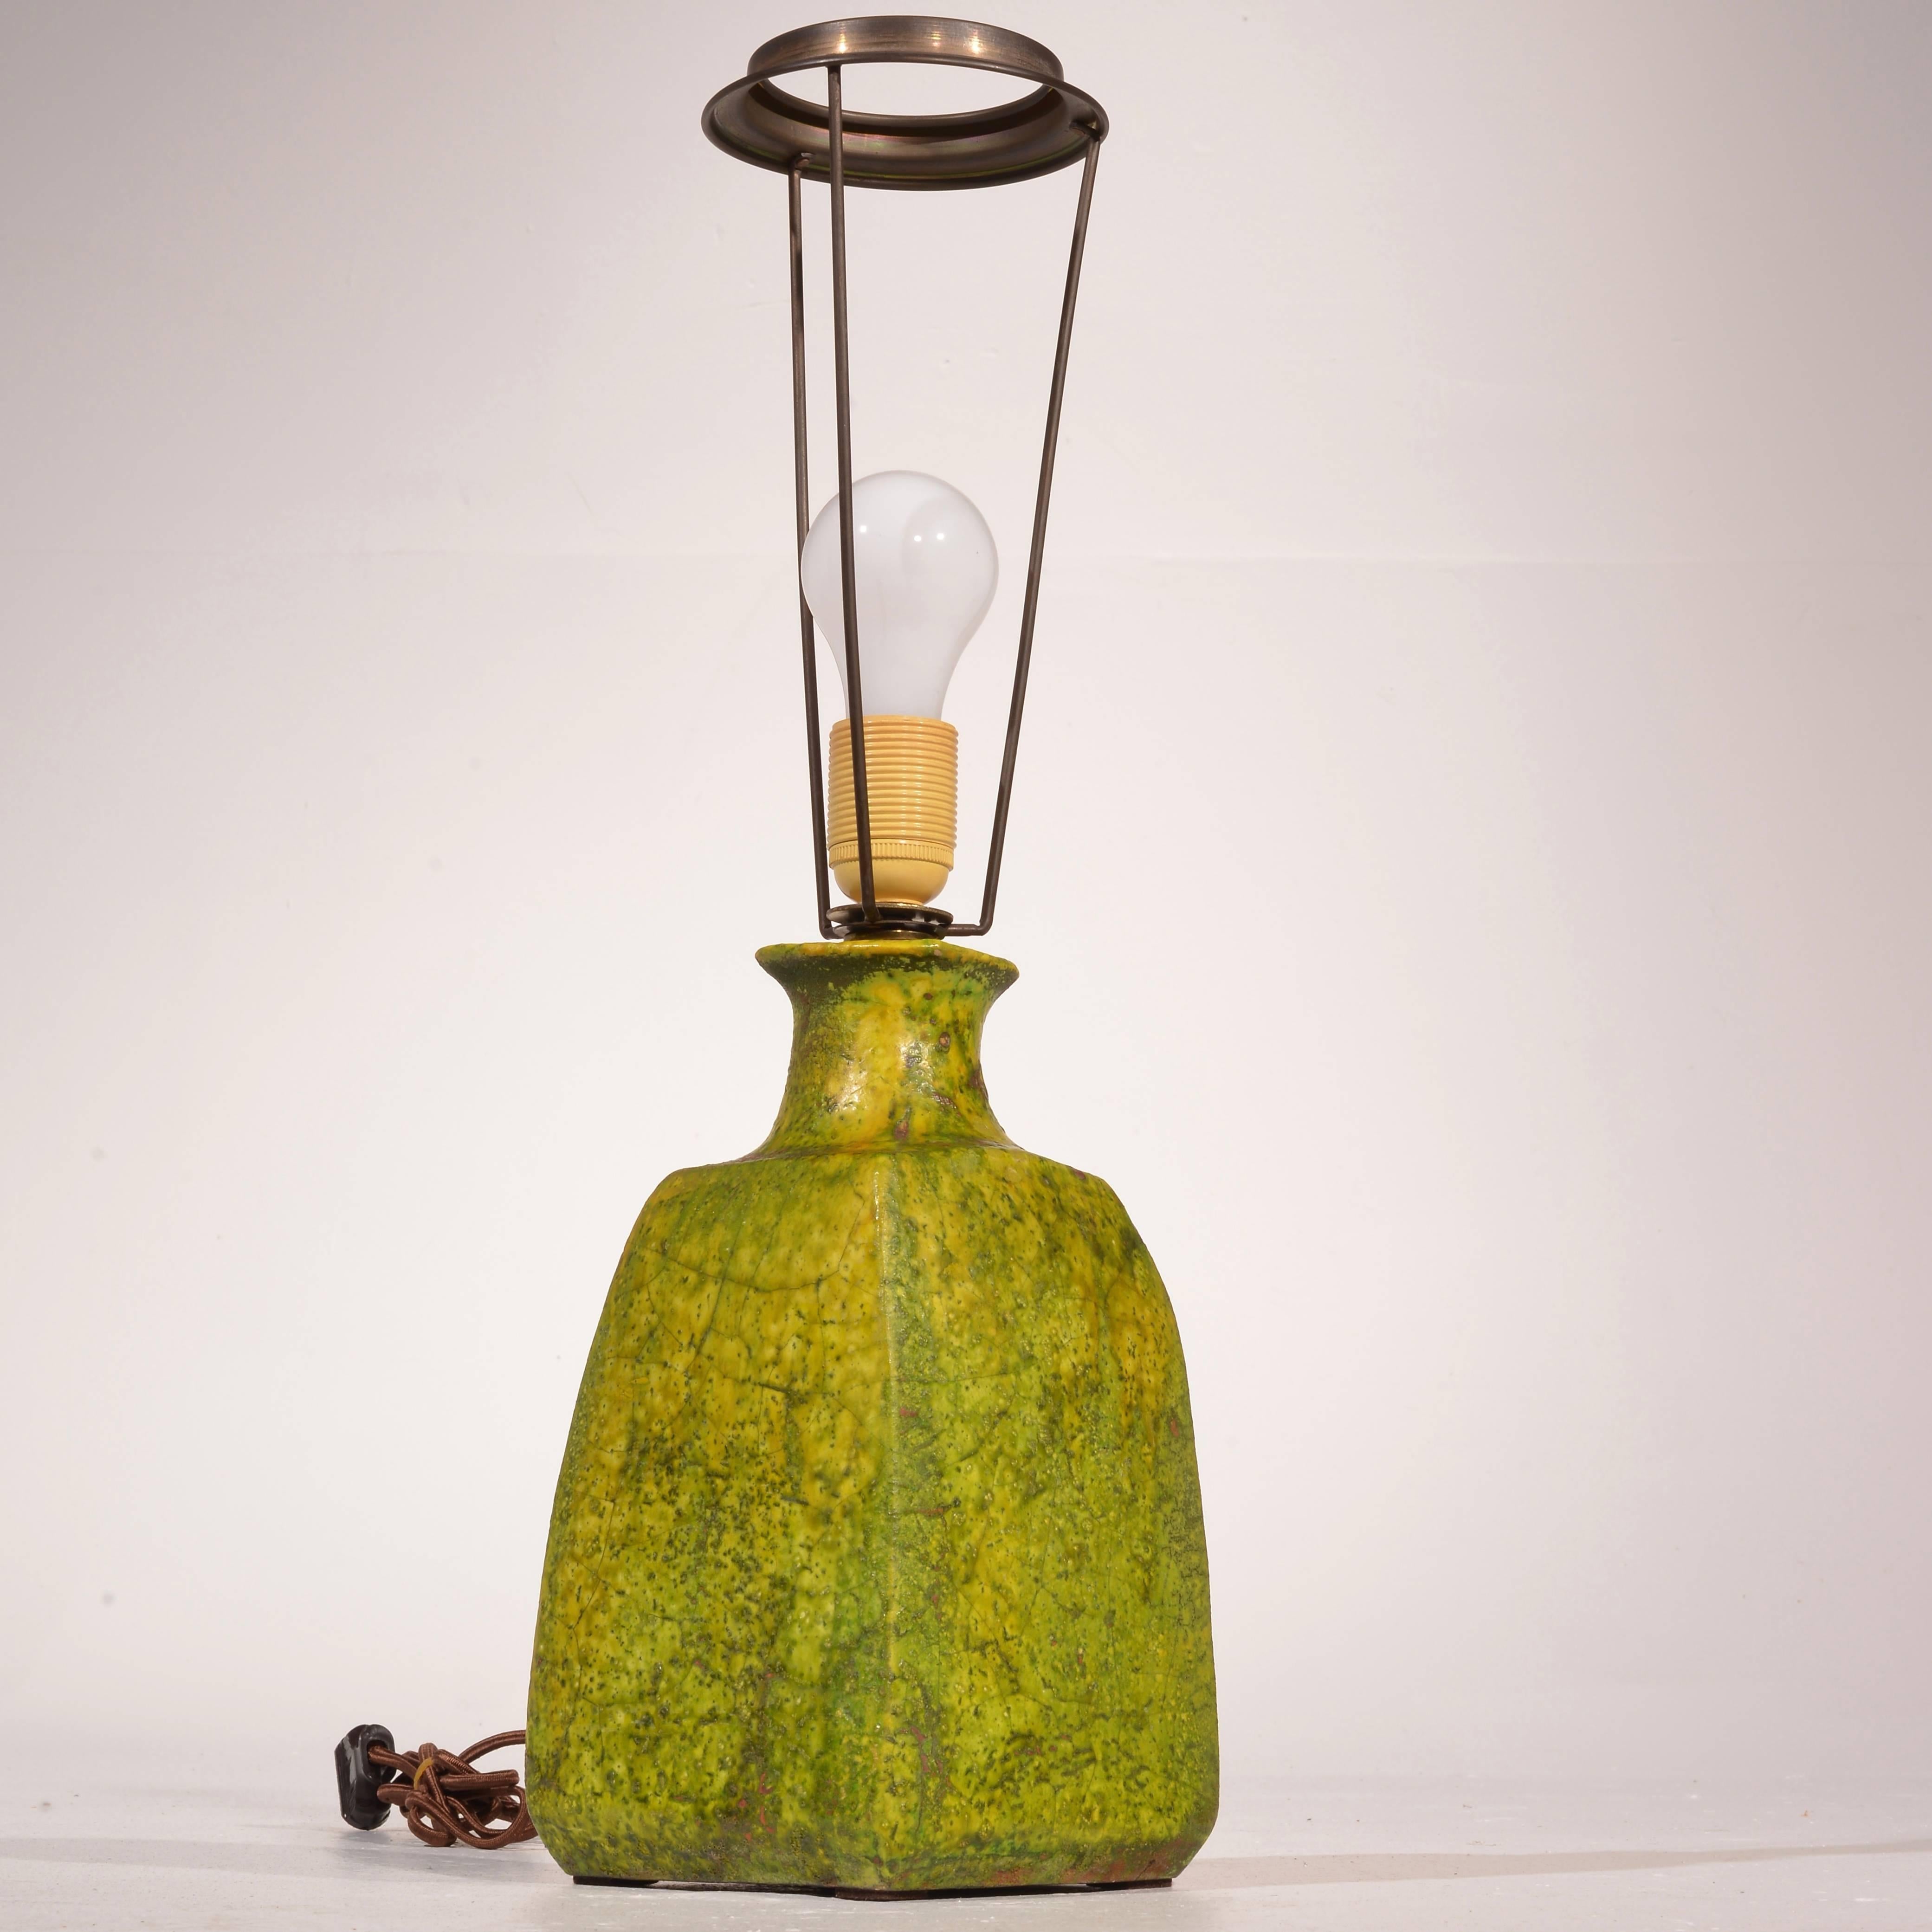 Lampe de table italienne en céramique de studio en vert par Marcello Fantoni, vers 1950.
Nouvellement recâblé.